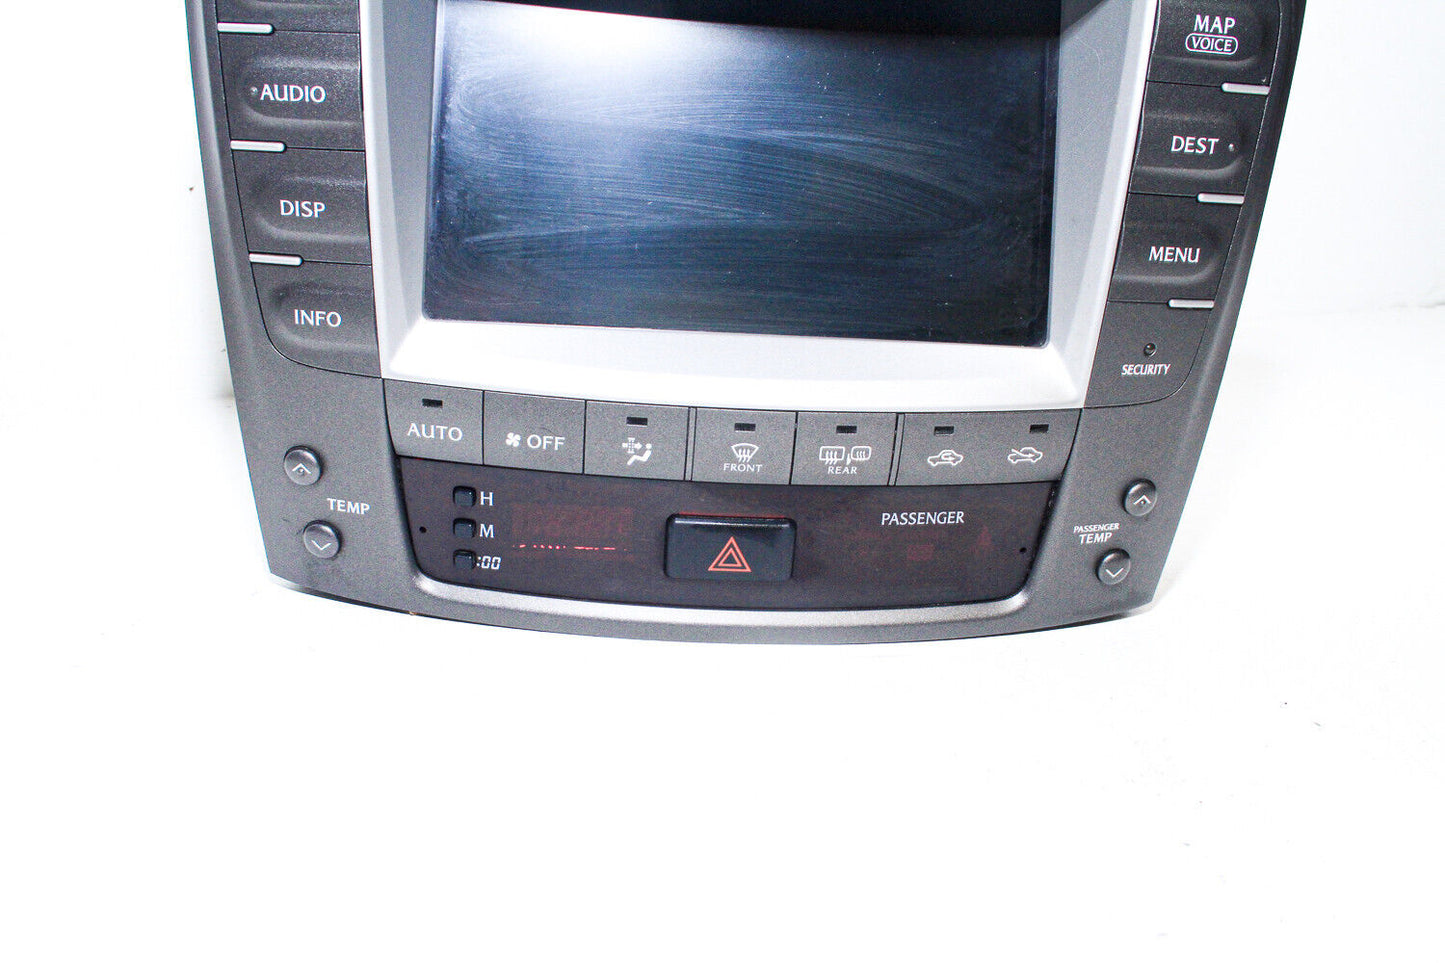 06-08 Lexus Is250 Navigation System Climate Control Unit 86111-53050 Oem